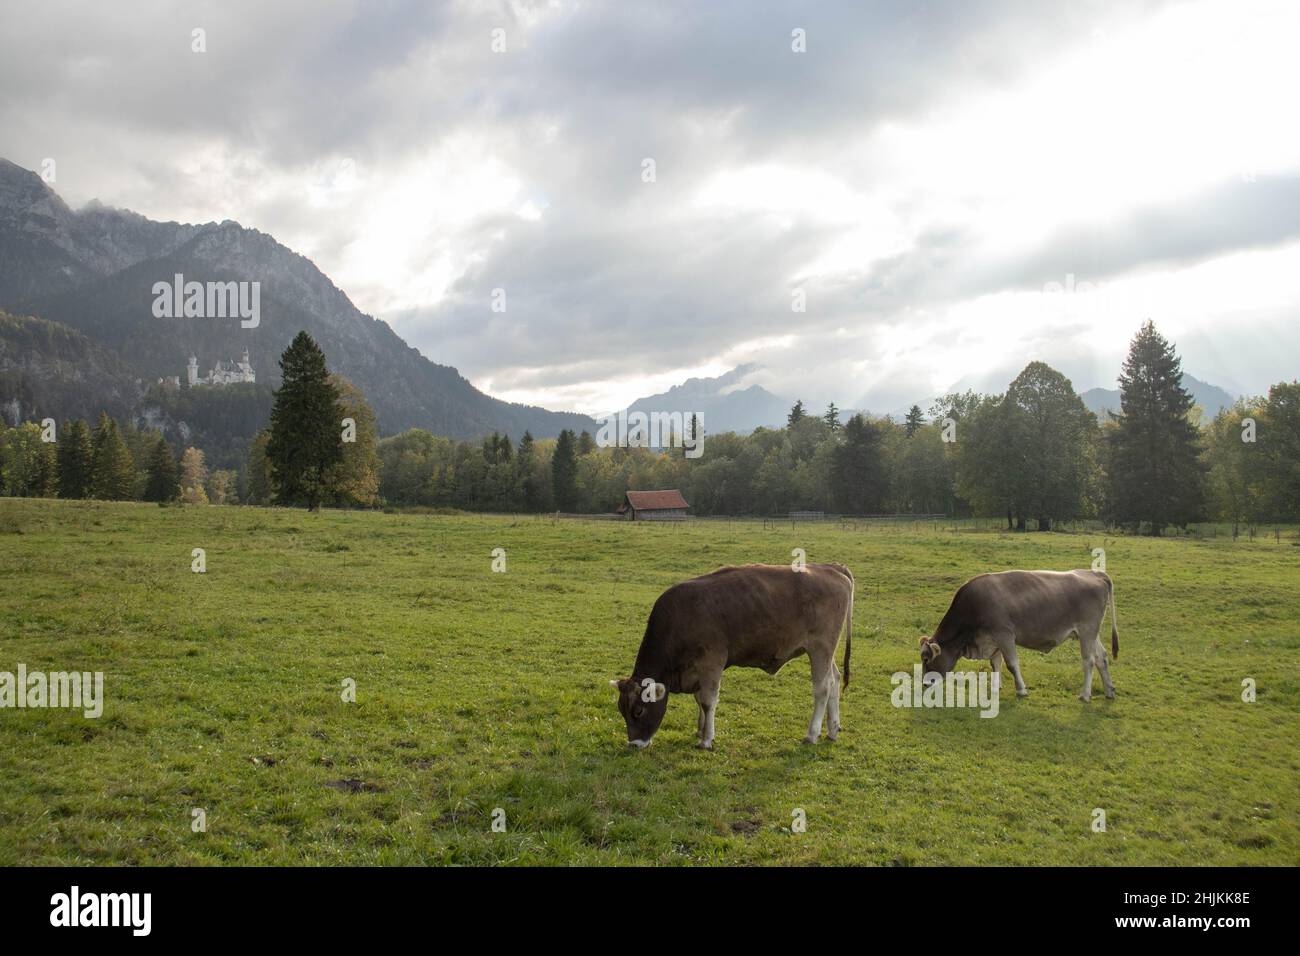 Zwei Kühe grasen auf einer saftig grünen Weise. Im Hintergrund sieht man das Schloss Neuschwanstein mit Bergkulisse. Foto Stock